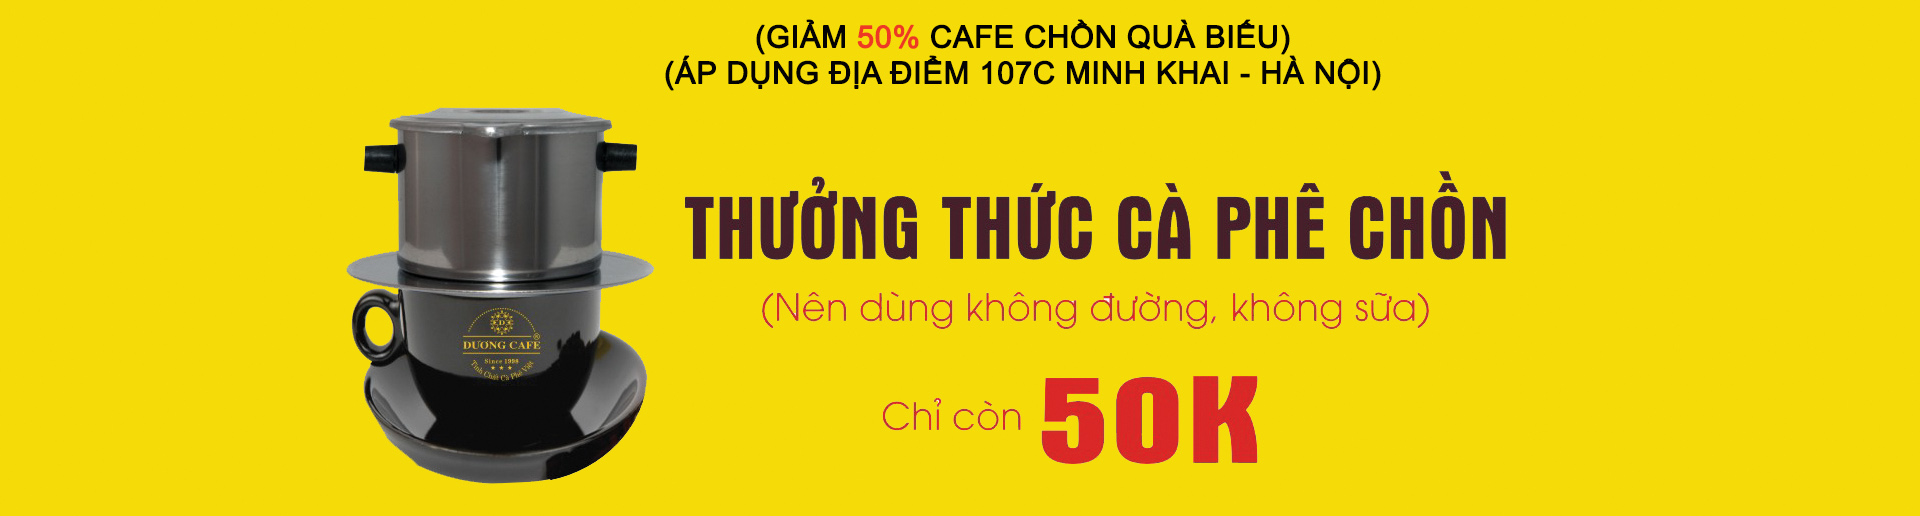 banner den cua hang cafe chon